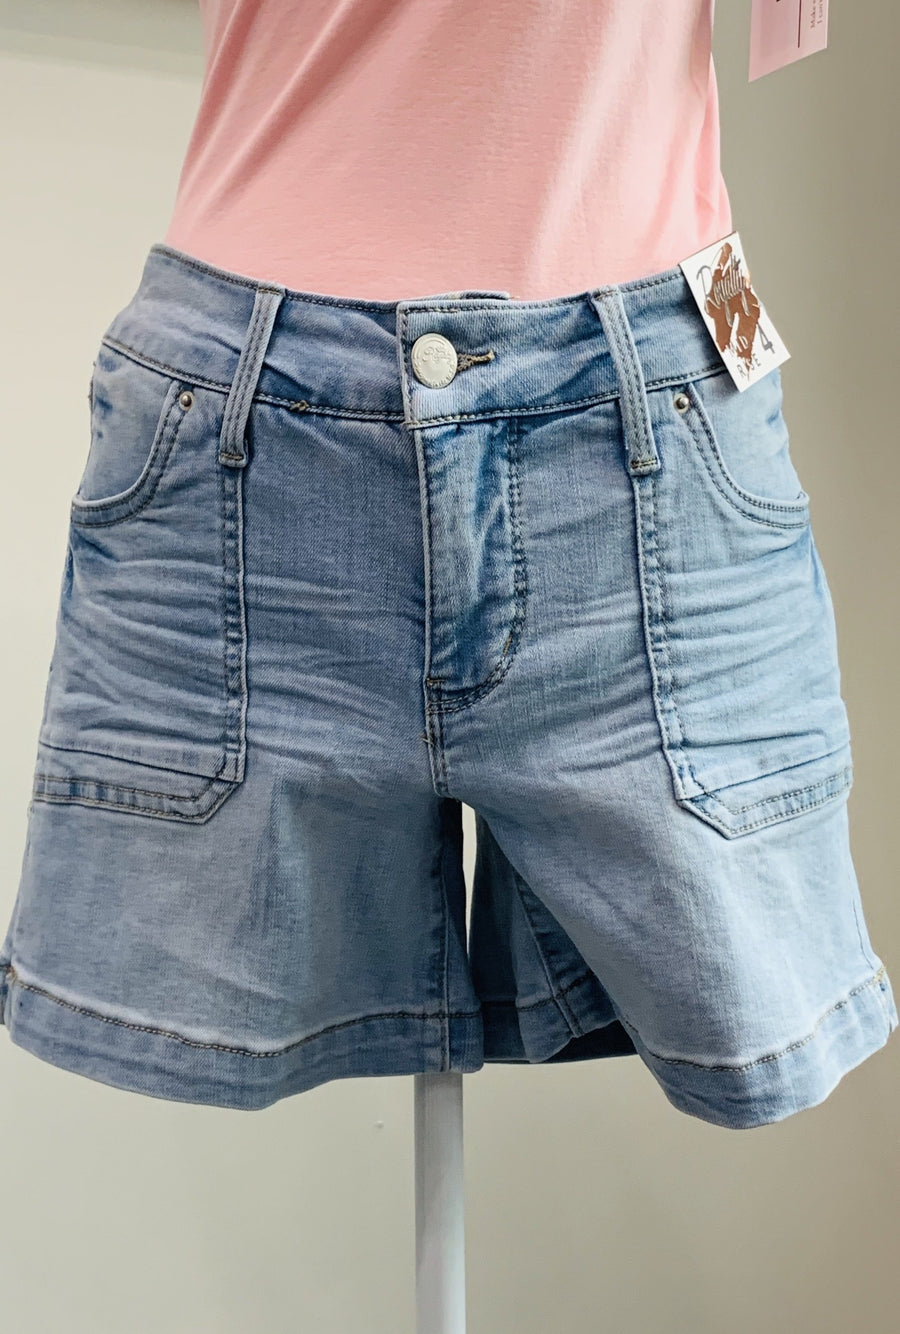 Patch Pocket Shorts - Bellamie Boutique